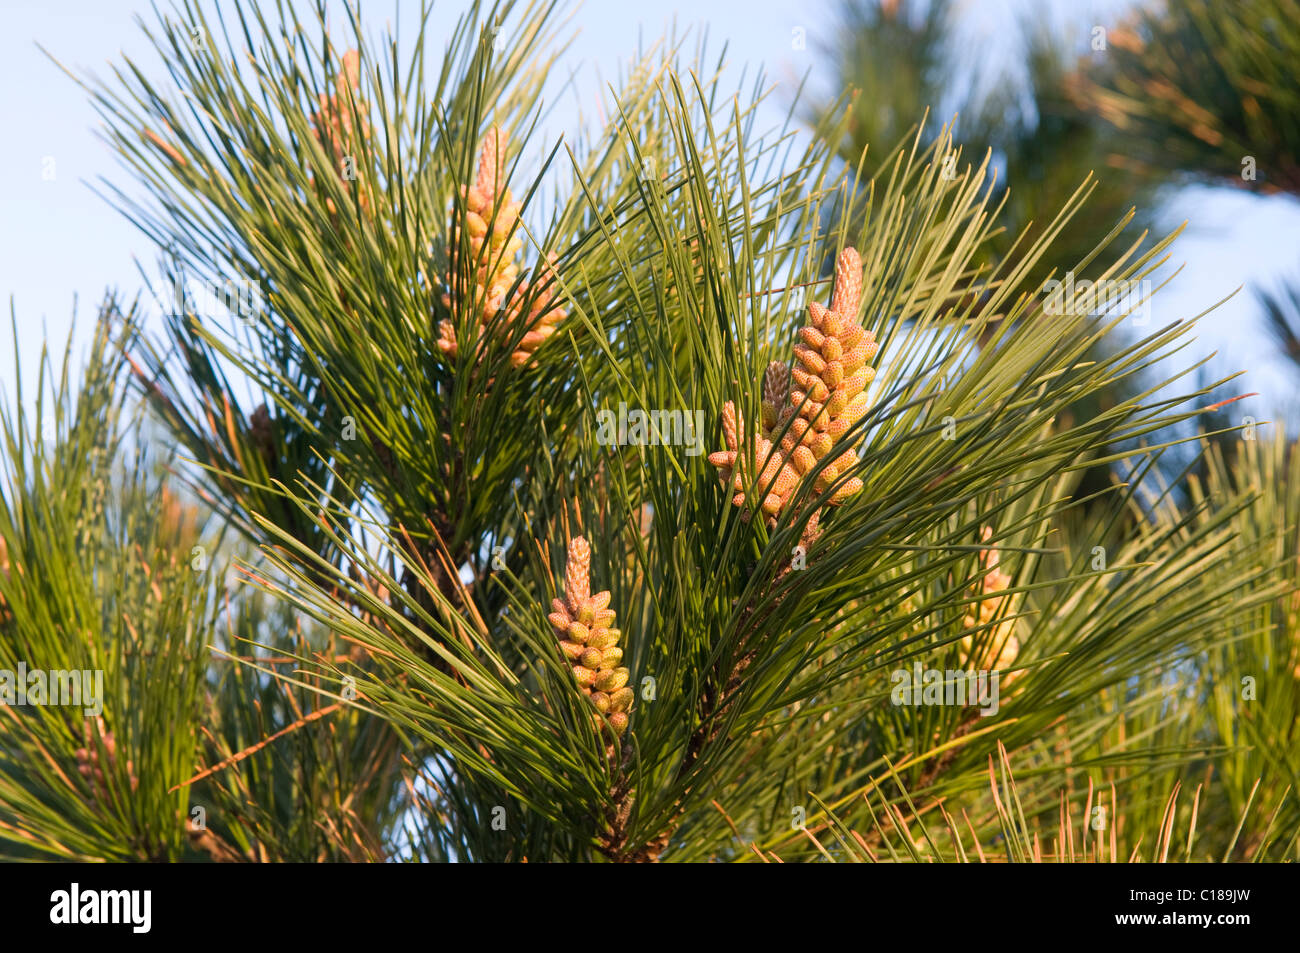 Pine tree forming pine cones Stock Photo